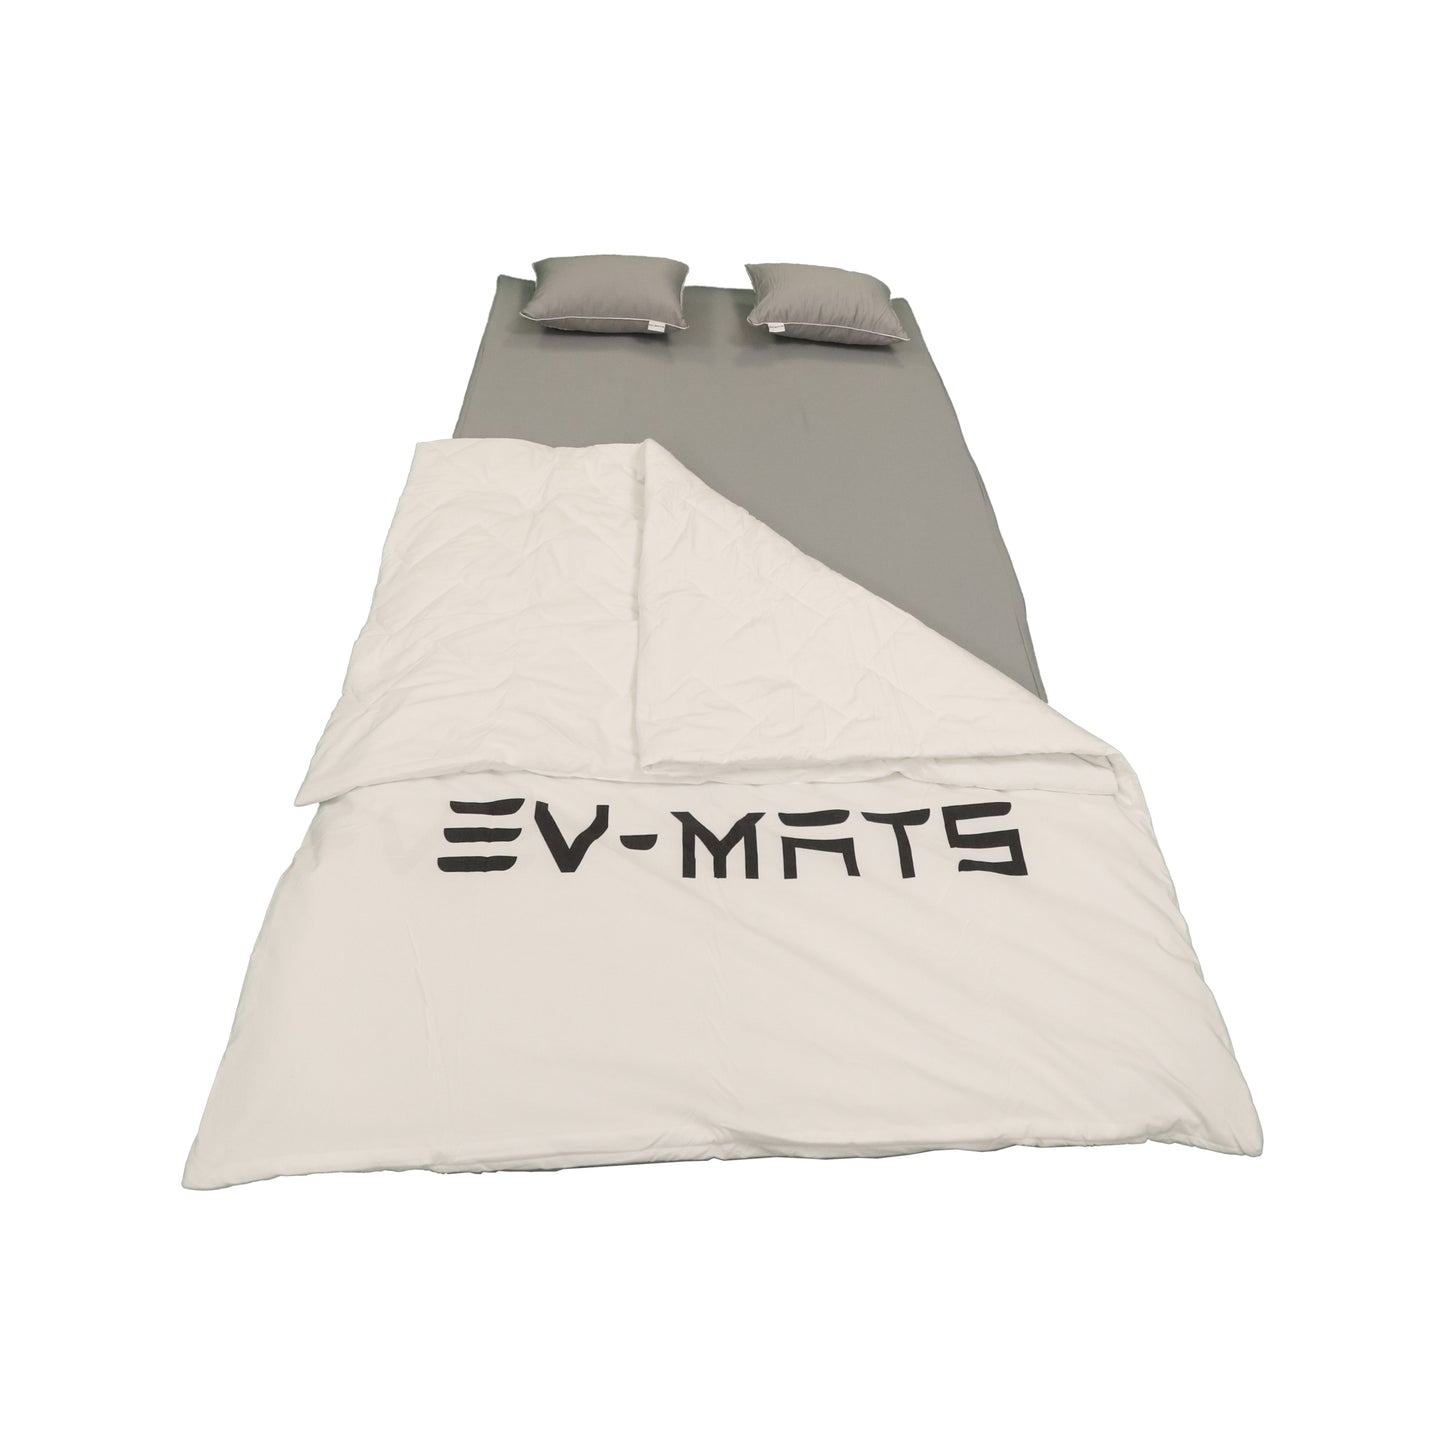 EV-MATS Basic CAMP SET for Tesla Model 3 inkluderer Tesla-madrassen, den vanntette bagen som passer i bagasjerommet på Tesla Model 3, et laken, en dyne, 2 puter og et putevar